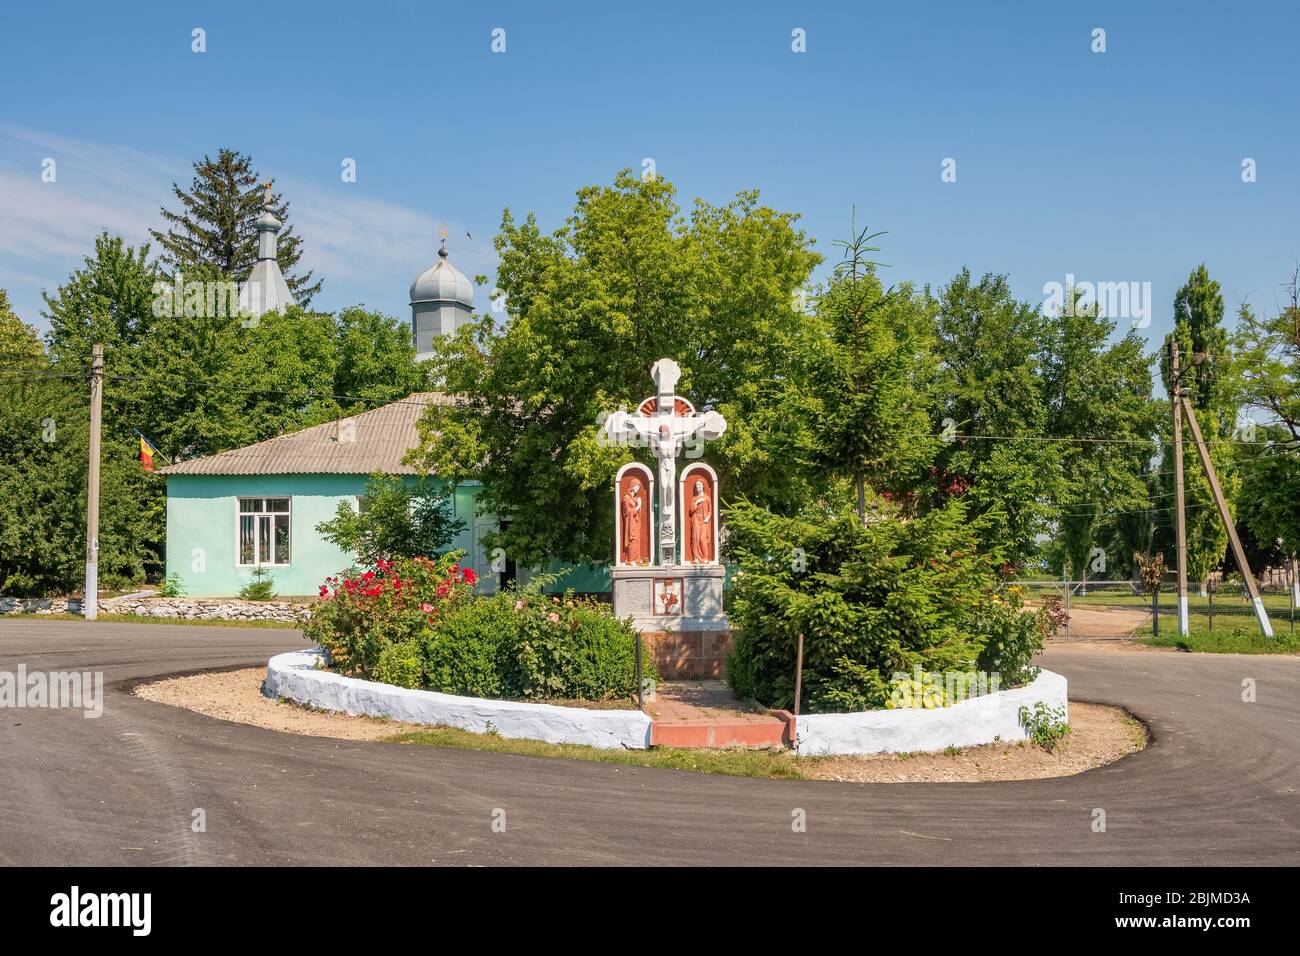 Orthodoxes christliches Kreuz und kleine Kirche in einem kleinen Dorf in Moldawien. Ländliche Sommerlandschaft aus Moldawien Stockfoto